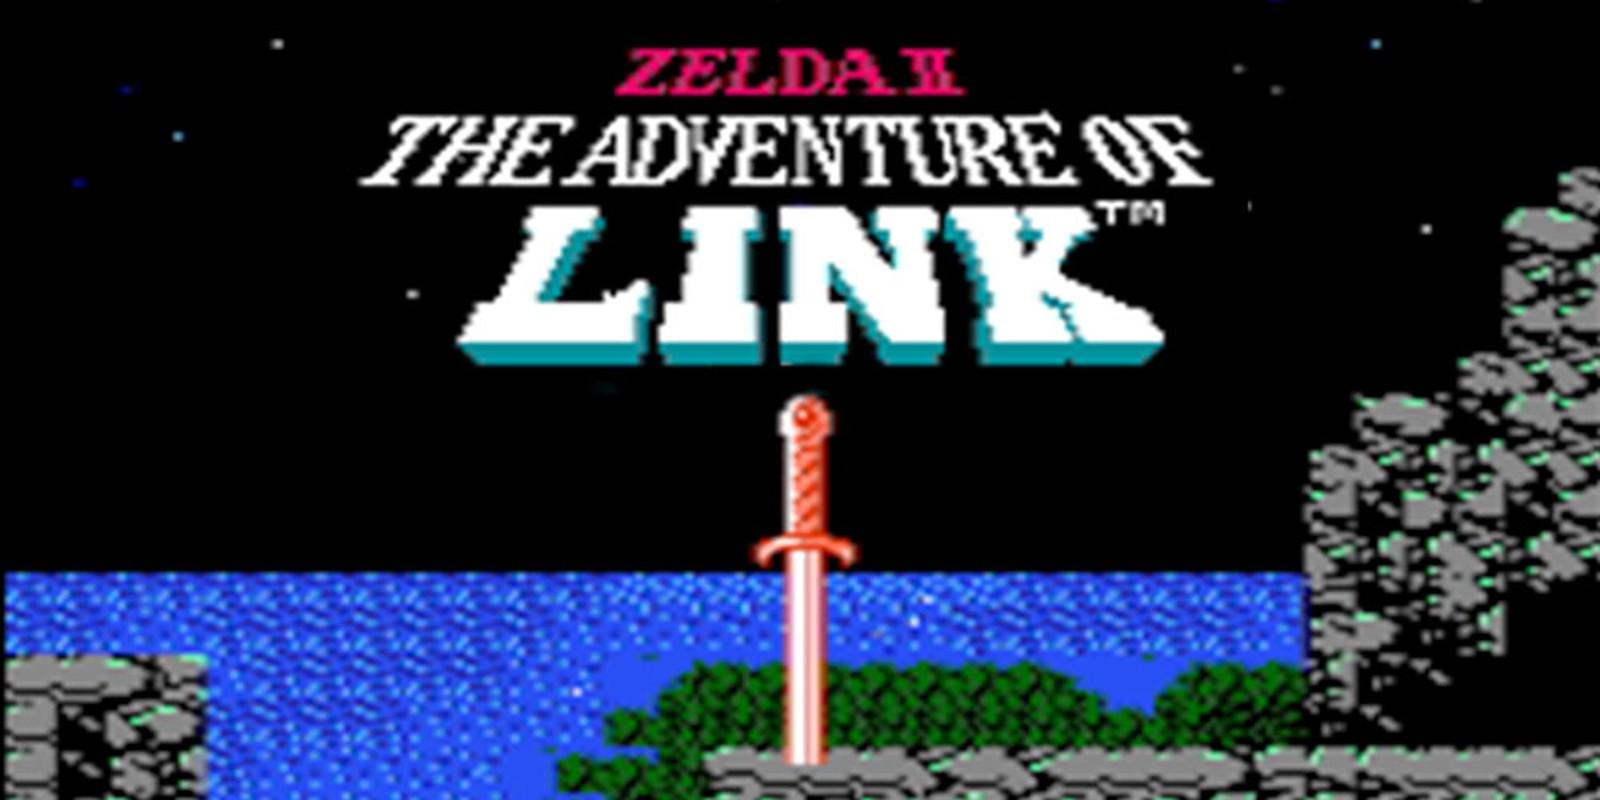 dumb quotes from games - Zelda II: The Adventures of Link